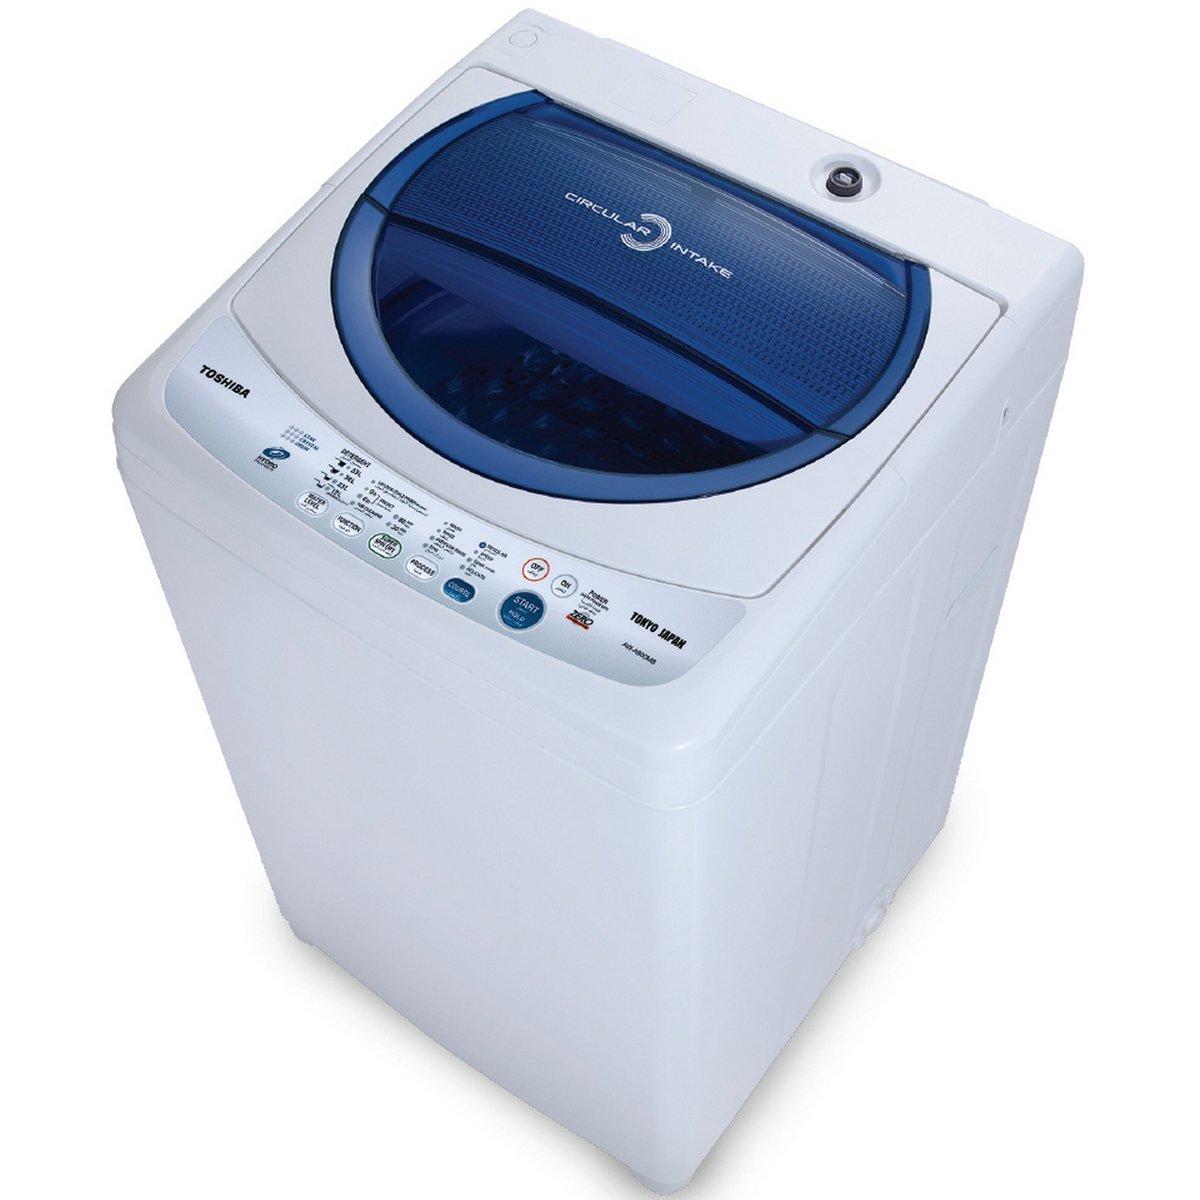 اشتري قم بشراء Toshiba Top Load Washing Machine AWF805MB 7Kg Online at Best Price من الموقع - من لولو هايبر ماركت T/L Auto W/Machines في الكويت